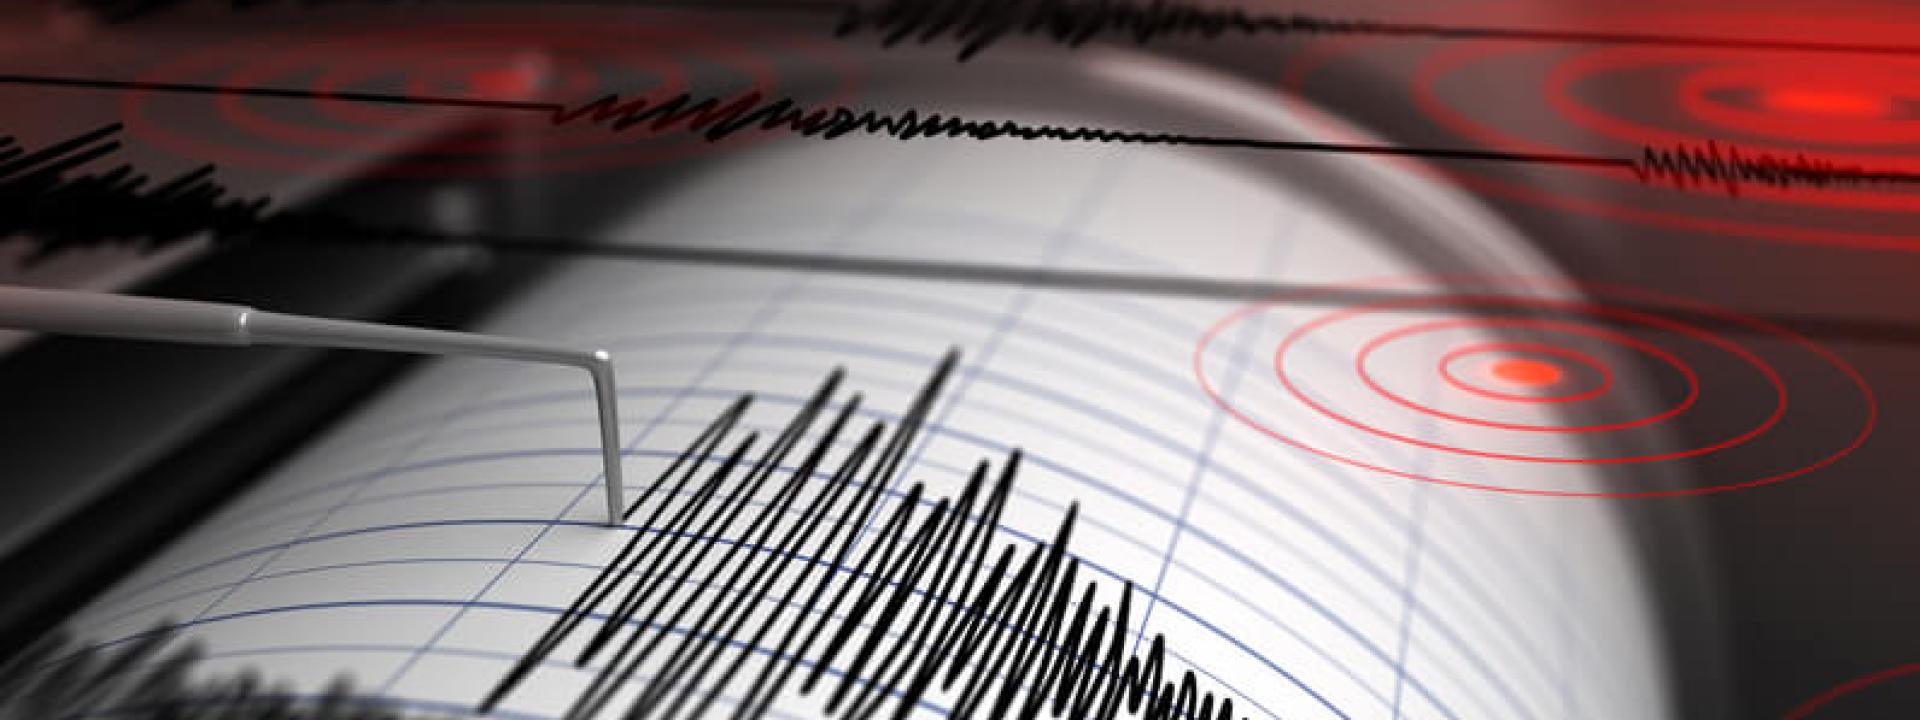 Marche - Lo sciame sismico non si ferma: nuova scossa 3.6 nella notte